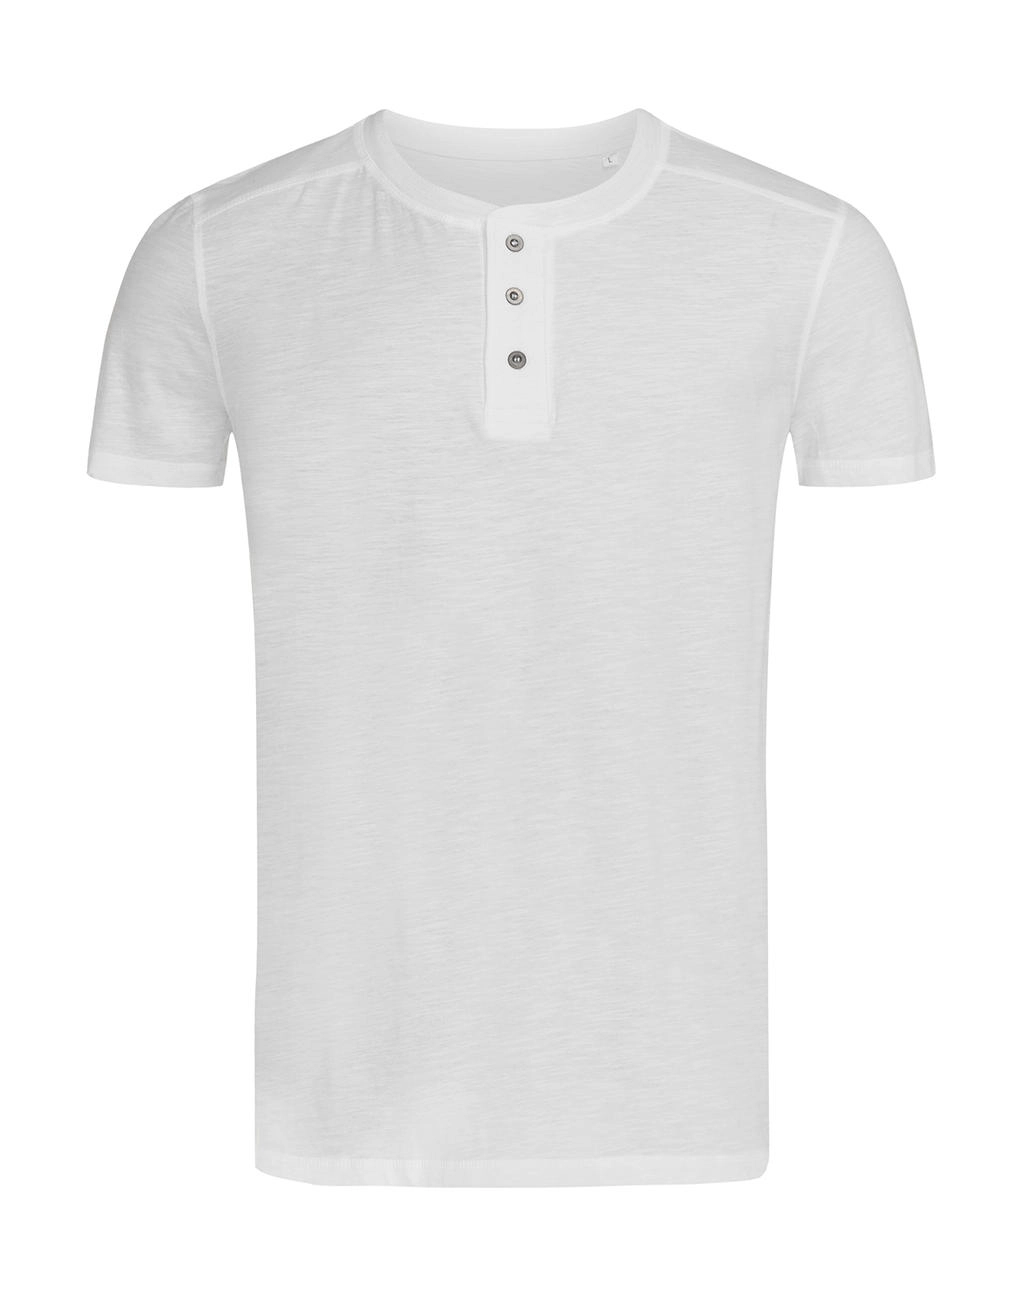 Shawn Henley T-shirt Men zum Besticken und Bedrucken in der Farbe White mit Ihren Logo, Schriftzug oder Motiv.